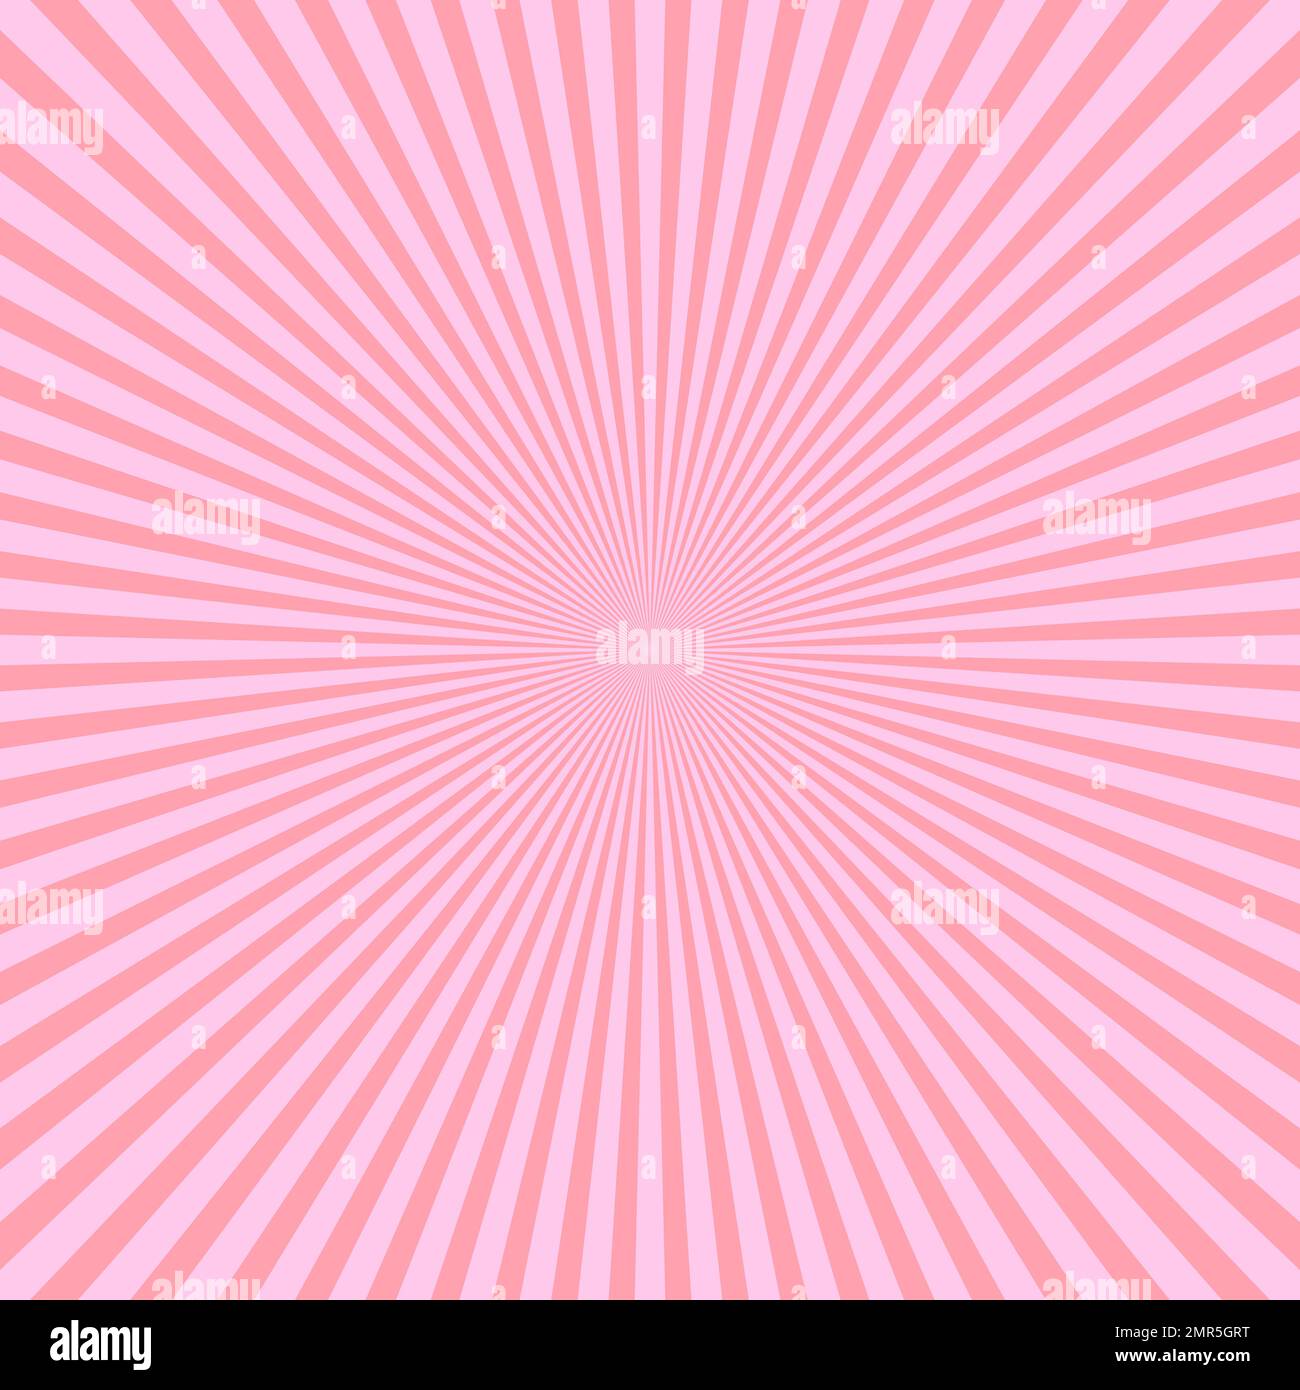 Raggi di luce rosa in disposizione radiale. Tema raggi di sole. Schema di sfondo astratto. Illustrazione vettoriale Illustrazione Vettoriale